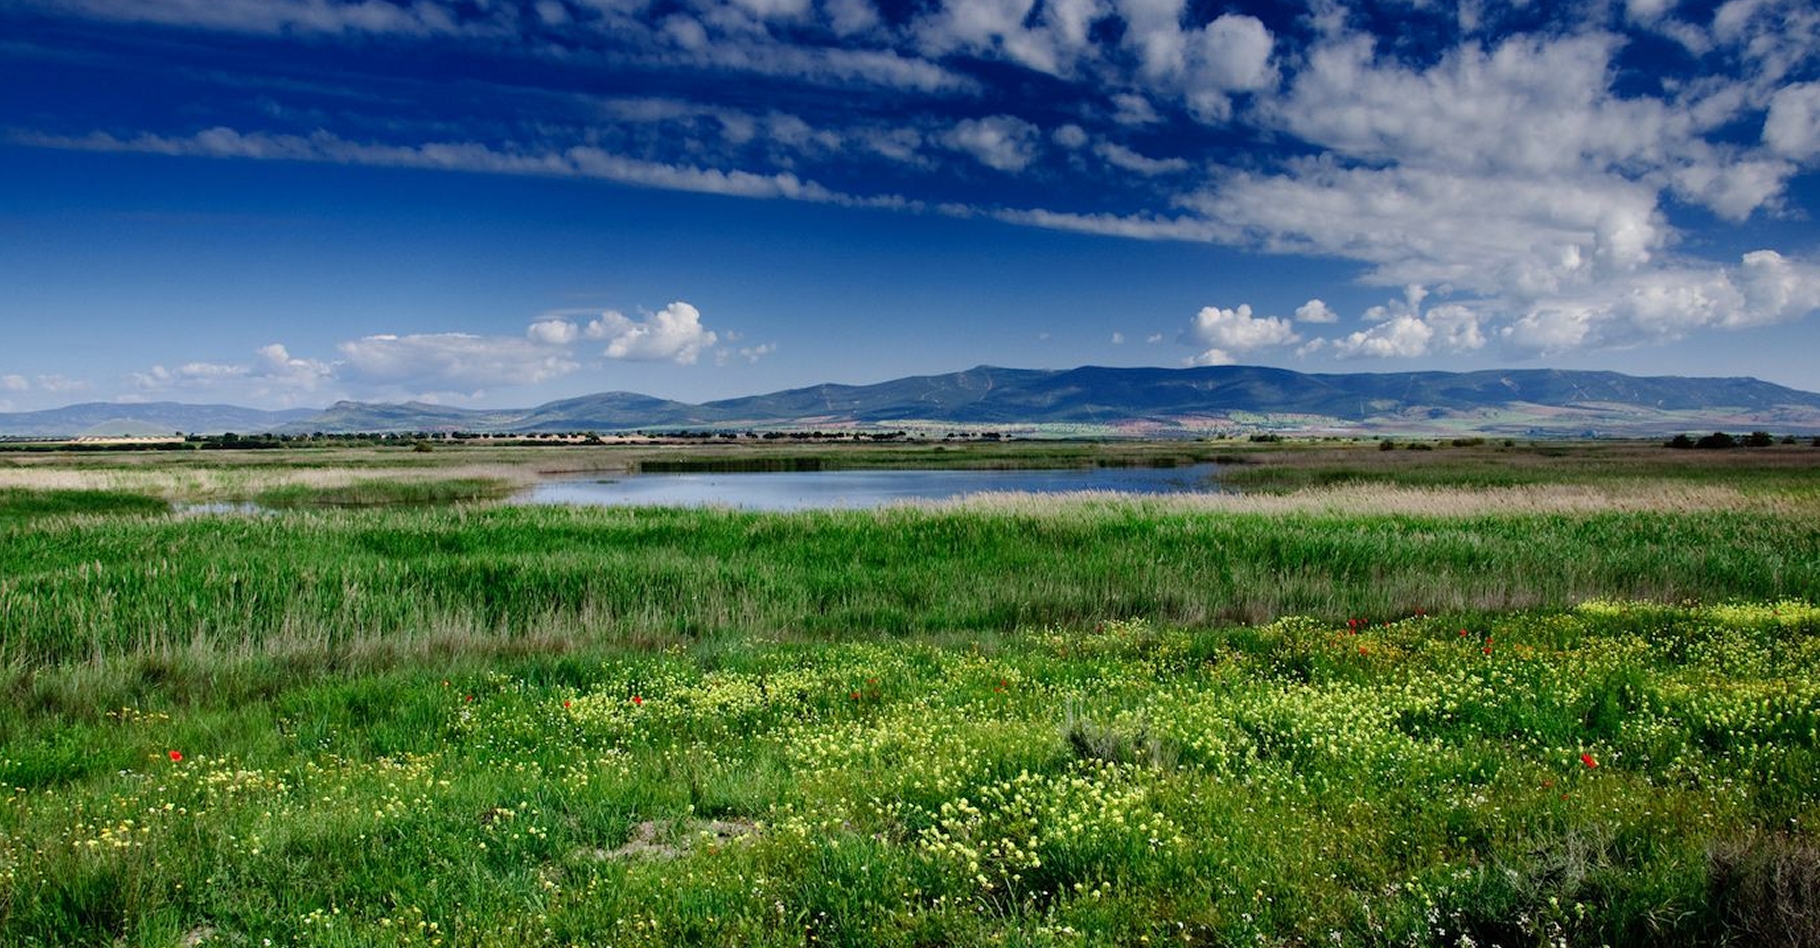 Les prairies font partie des biomes qui souffriraient le plus des activités humaines. Ici, une prairie dans le Parc national des Tablas de Daimiel, en Espagne. © yannboix, Flickr, CC by 2.0